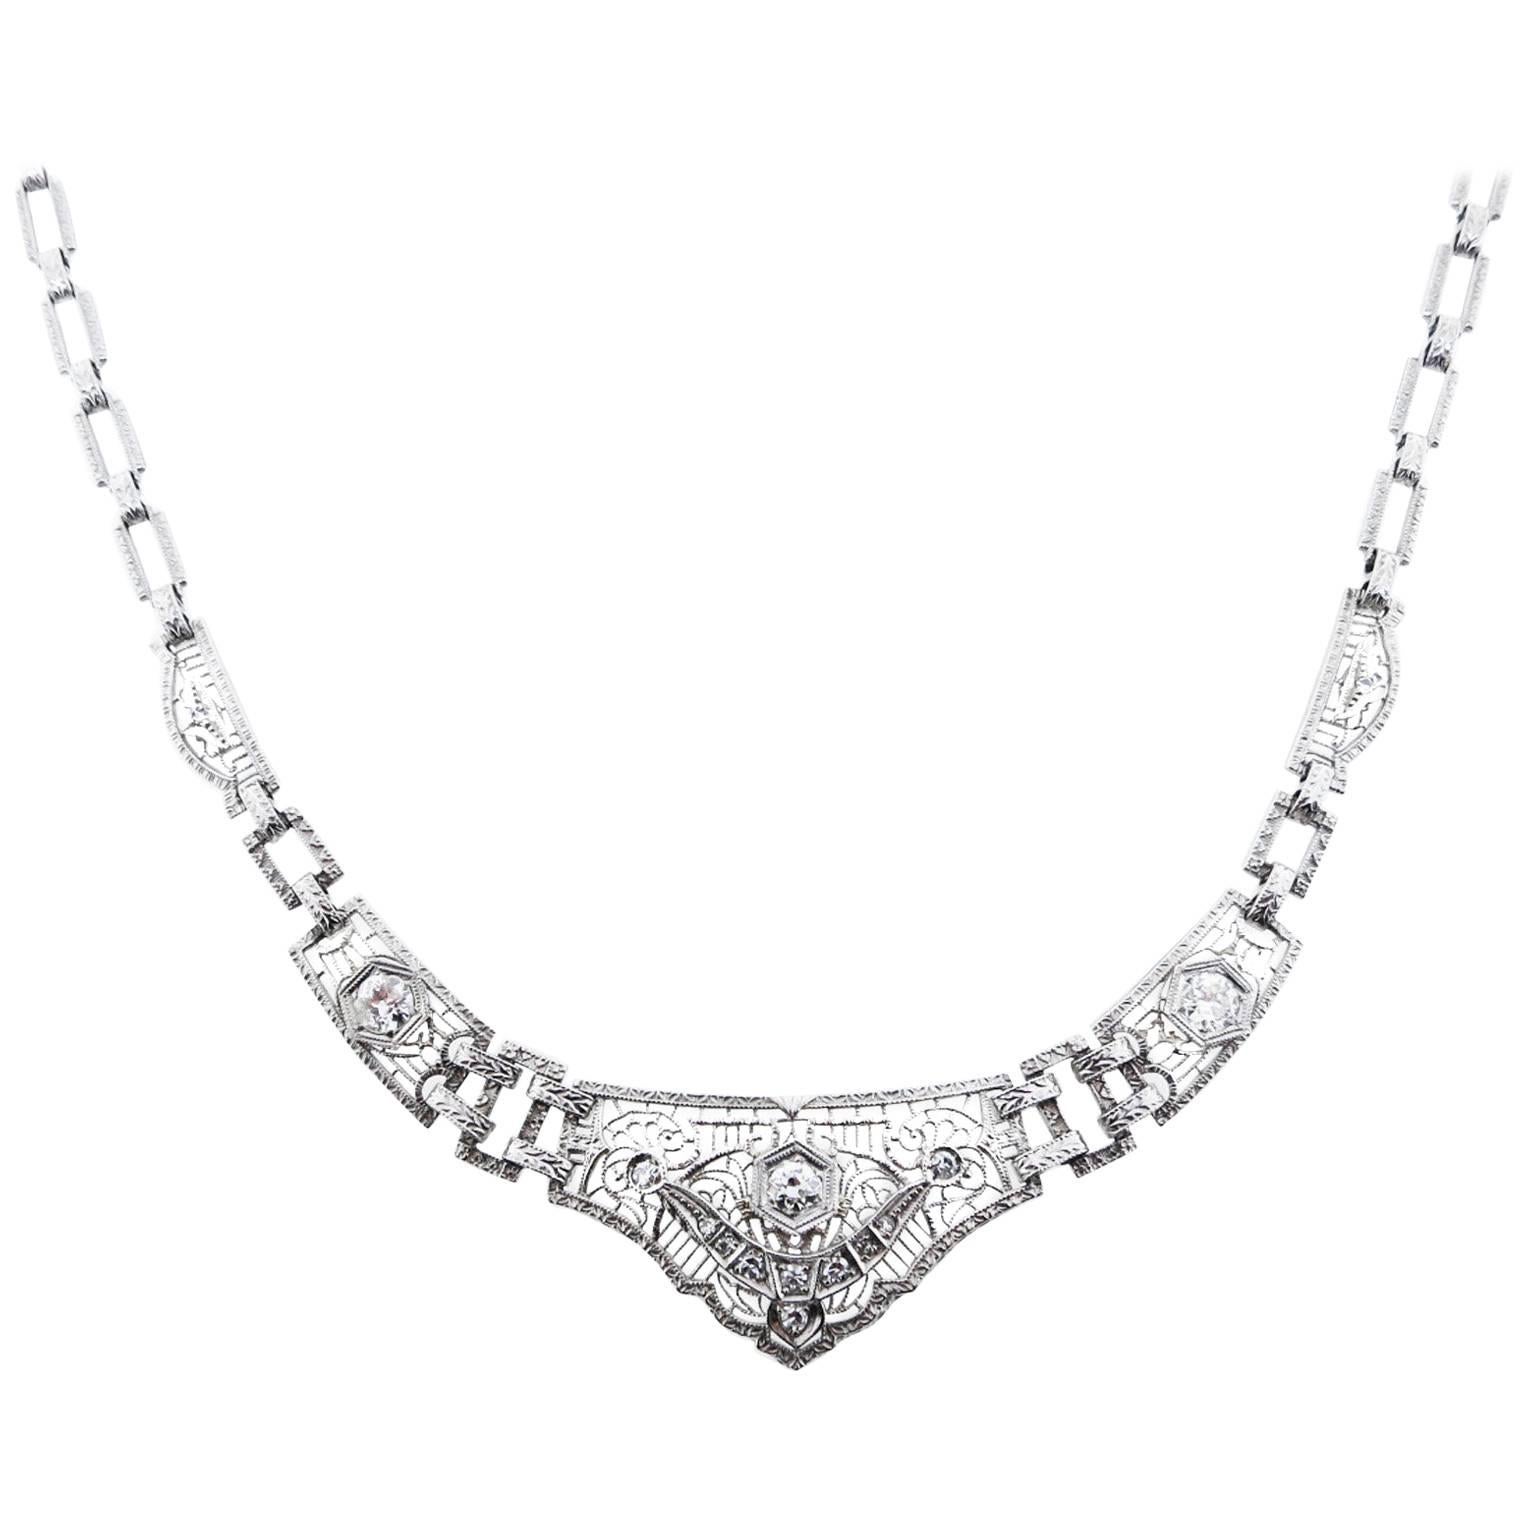 Unique Art Deco Platinum and 14kt. Diamond Filigree Necklace